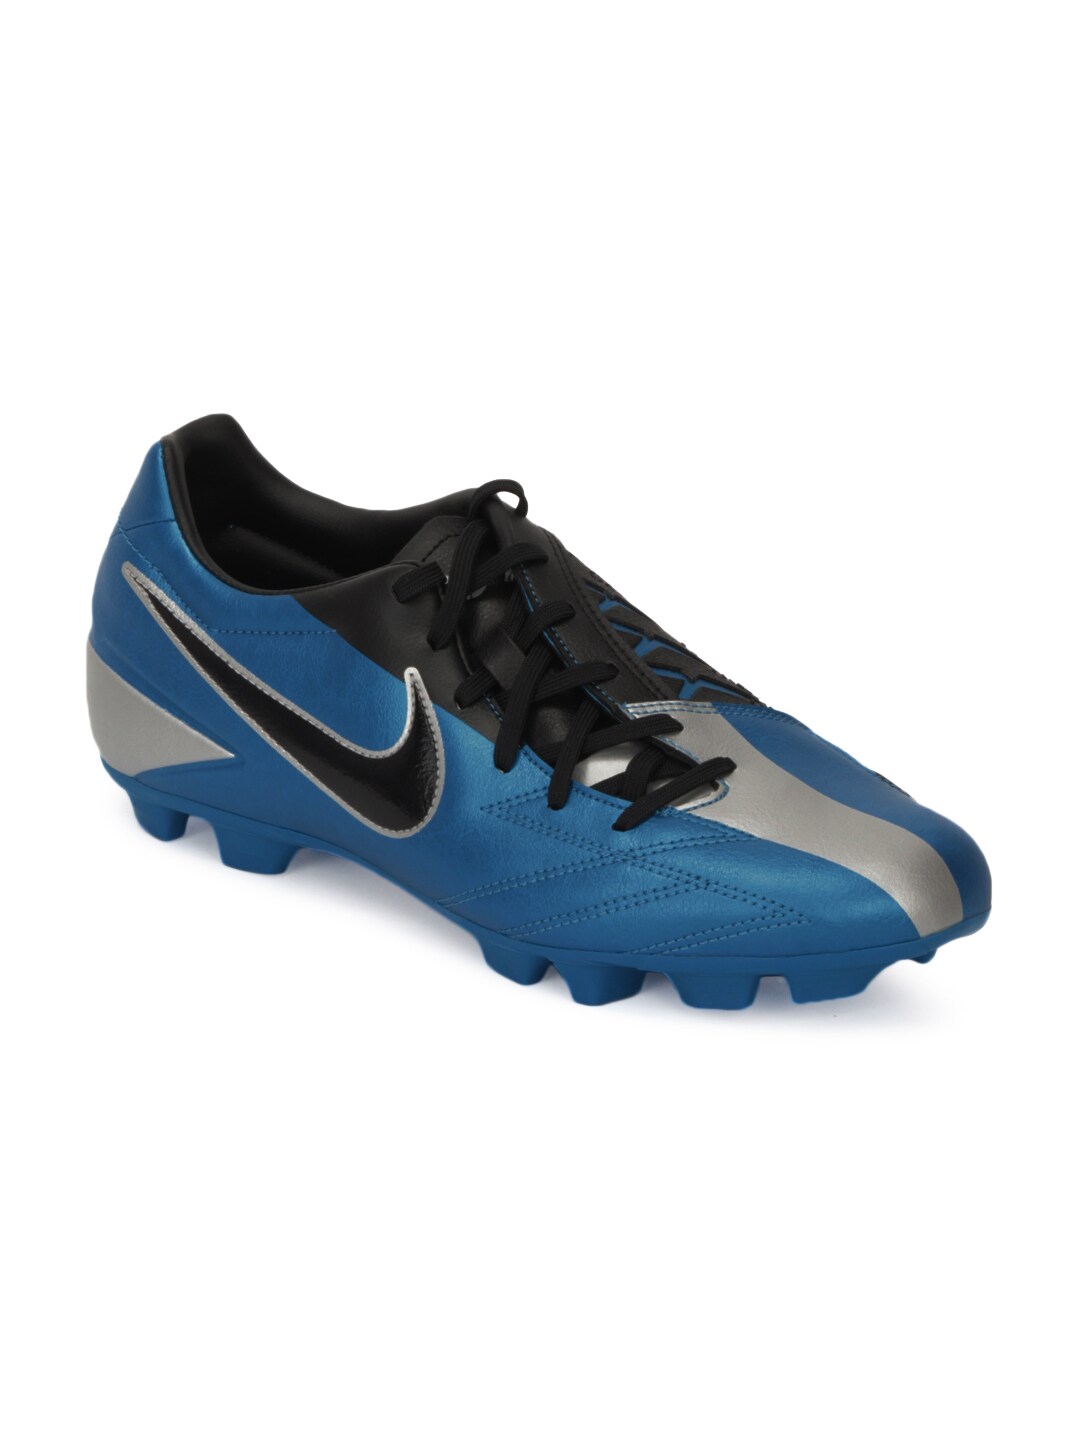 Nike Men T90 Shoot IV Hg-B Blue Sports Shoes